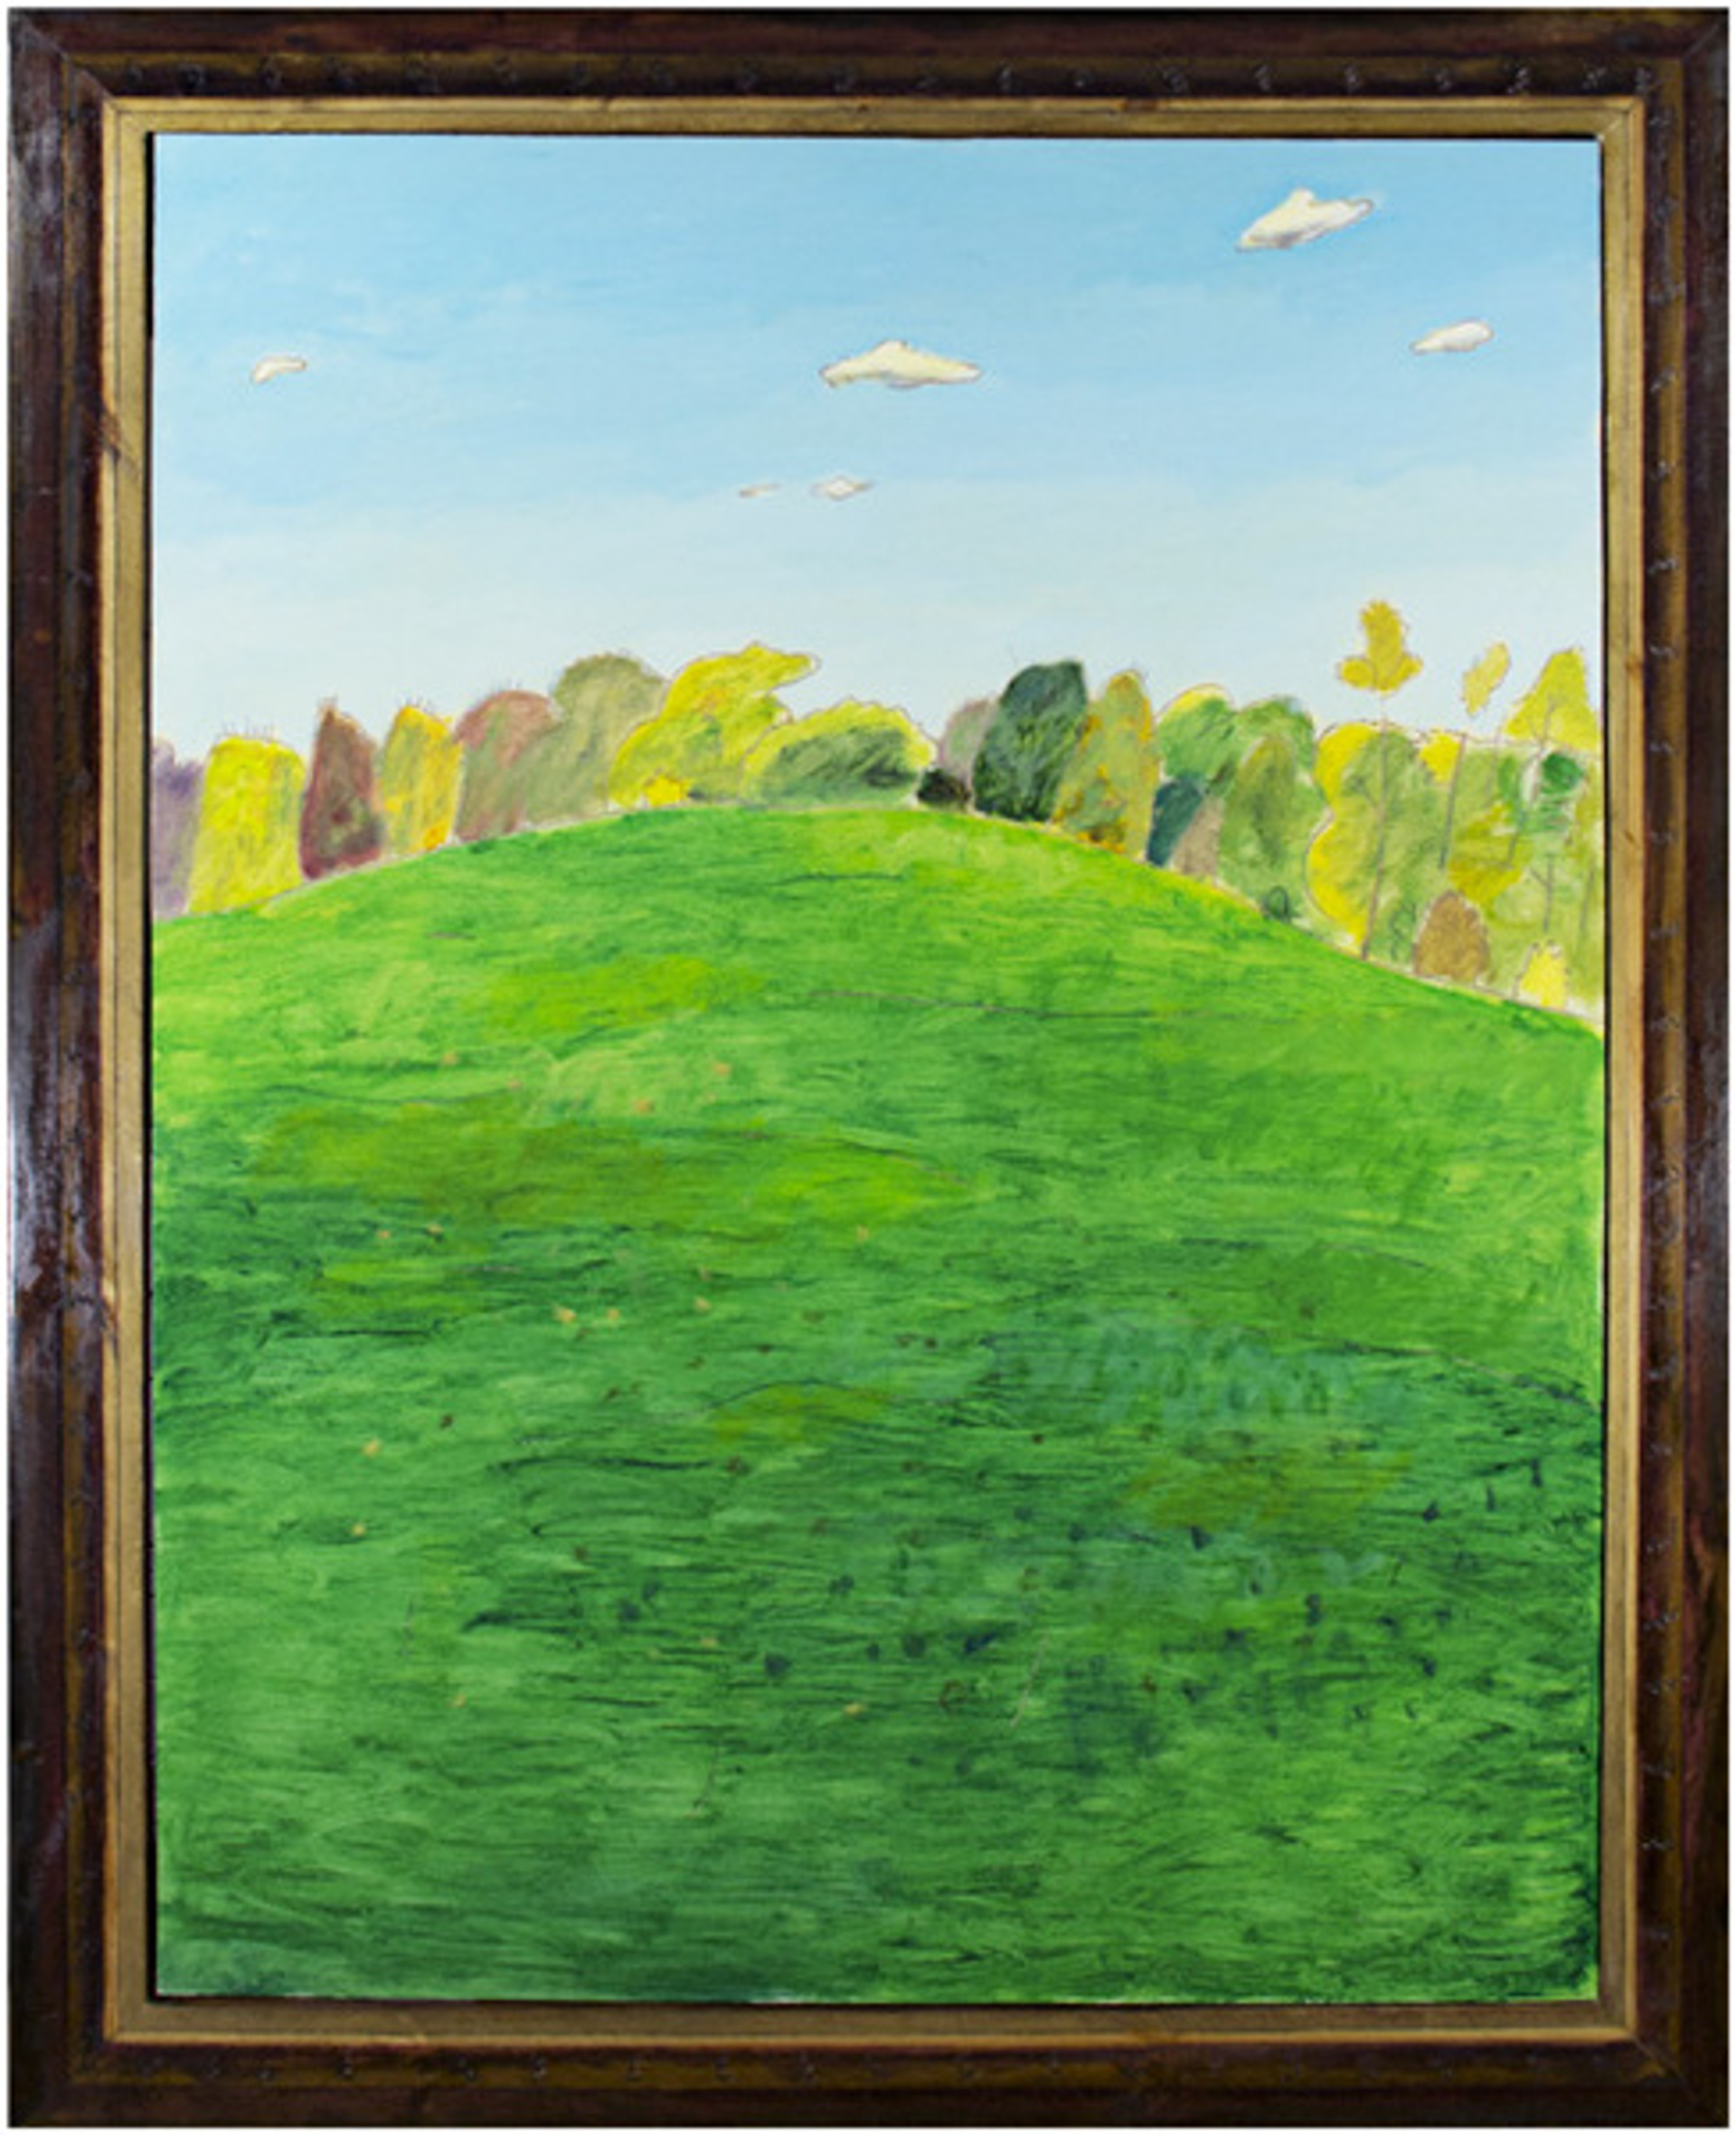 Green Meadow by Robert Richter